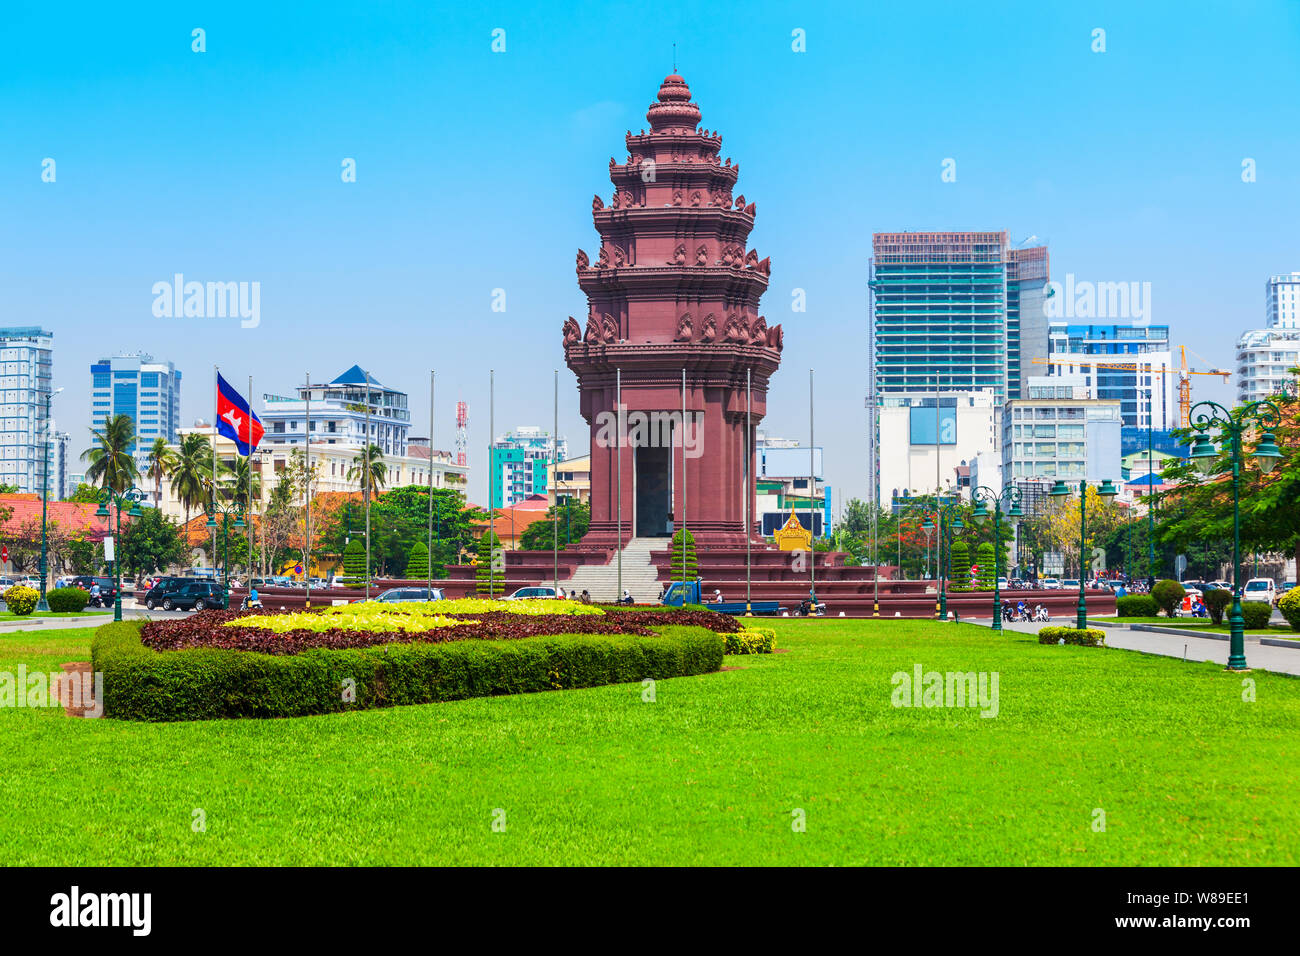 Die Independence Monument oder vimean Ekareach in Phnom Penh, der Hauptstadt von Kambodscha Stockfoto